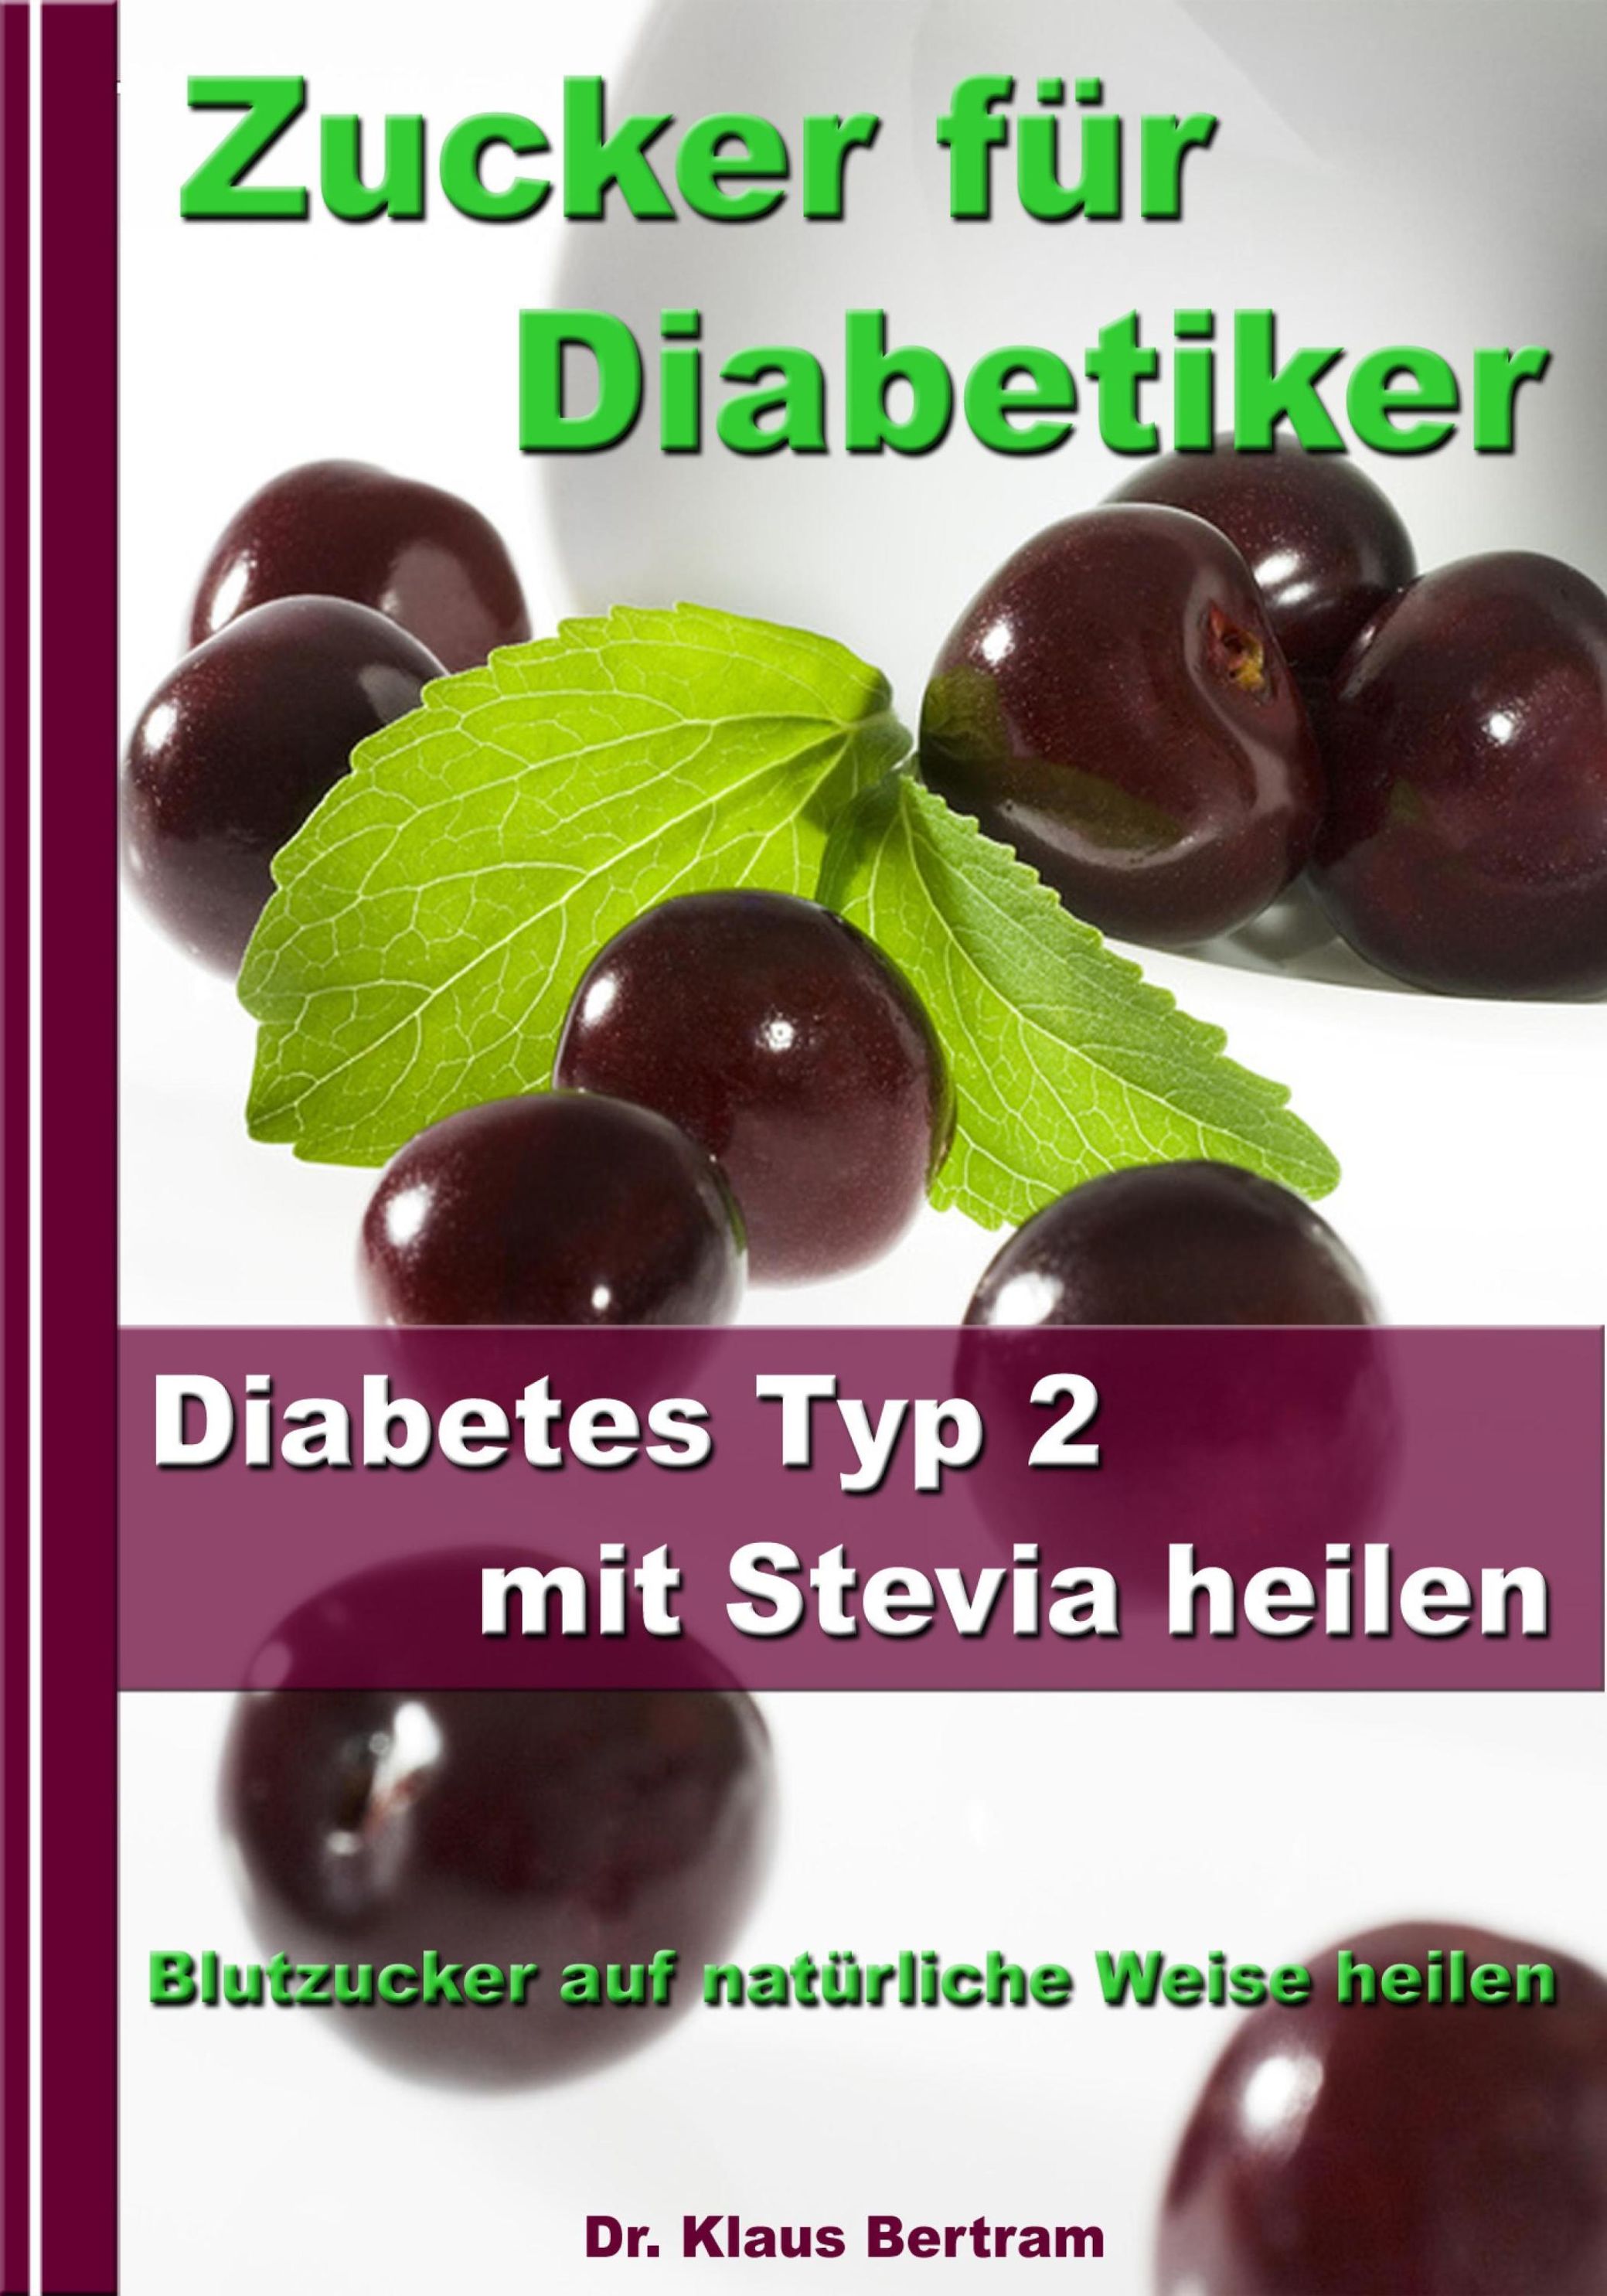 Zucker für Diabetiker - Diabetes Typ 2 mit Stevia heilen - Blutzucker auf  natürliche Weise senken eBook v. Klaus Bertram | Weltbild